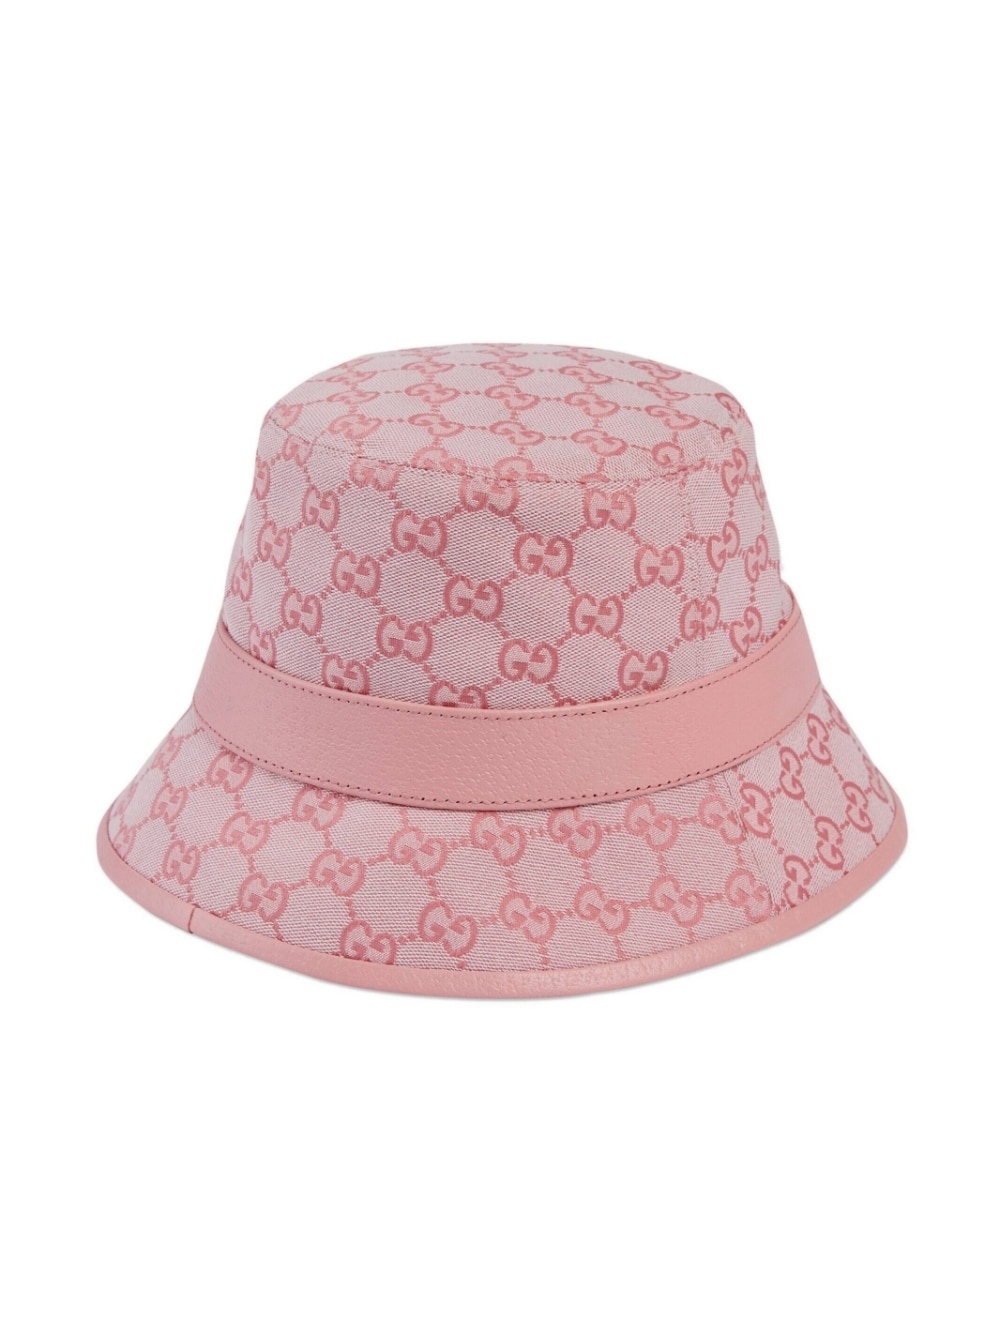 GG-canvas bucket hat - 3